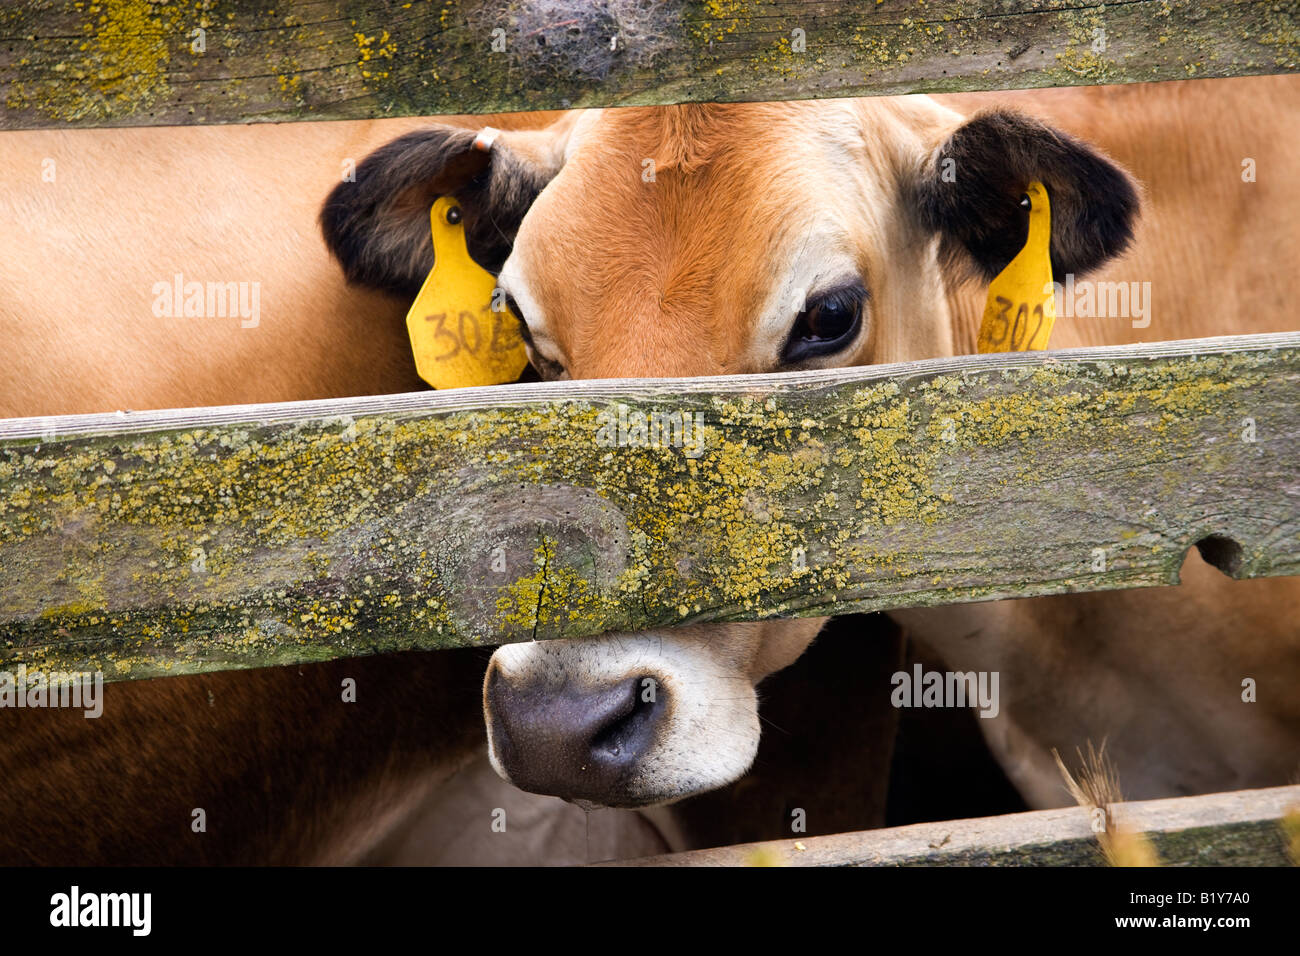 Jersey cow peering. Stock Photo